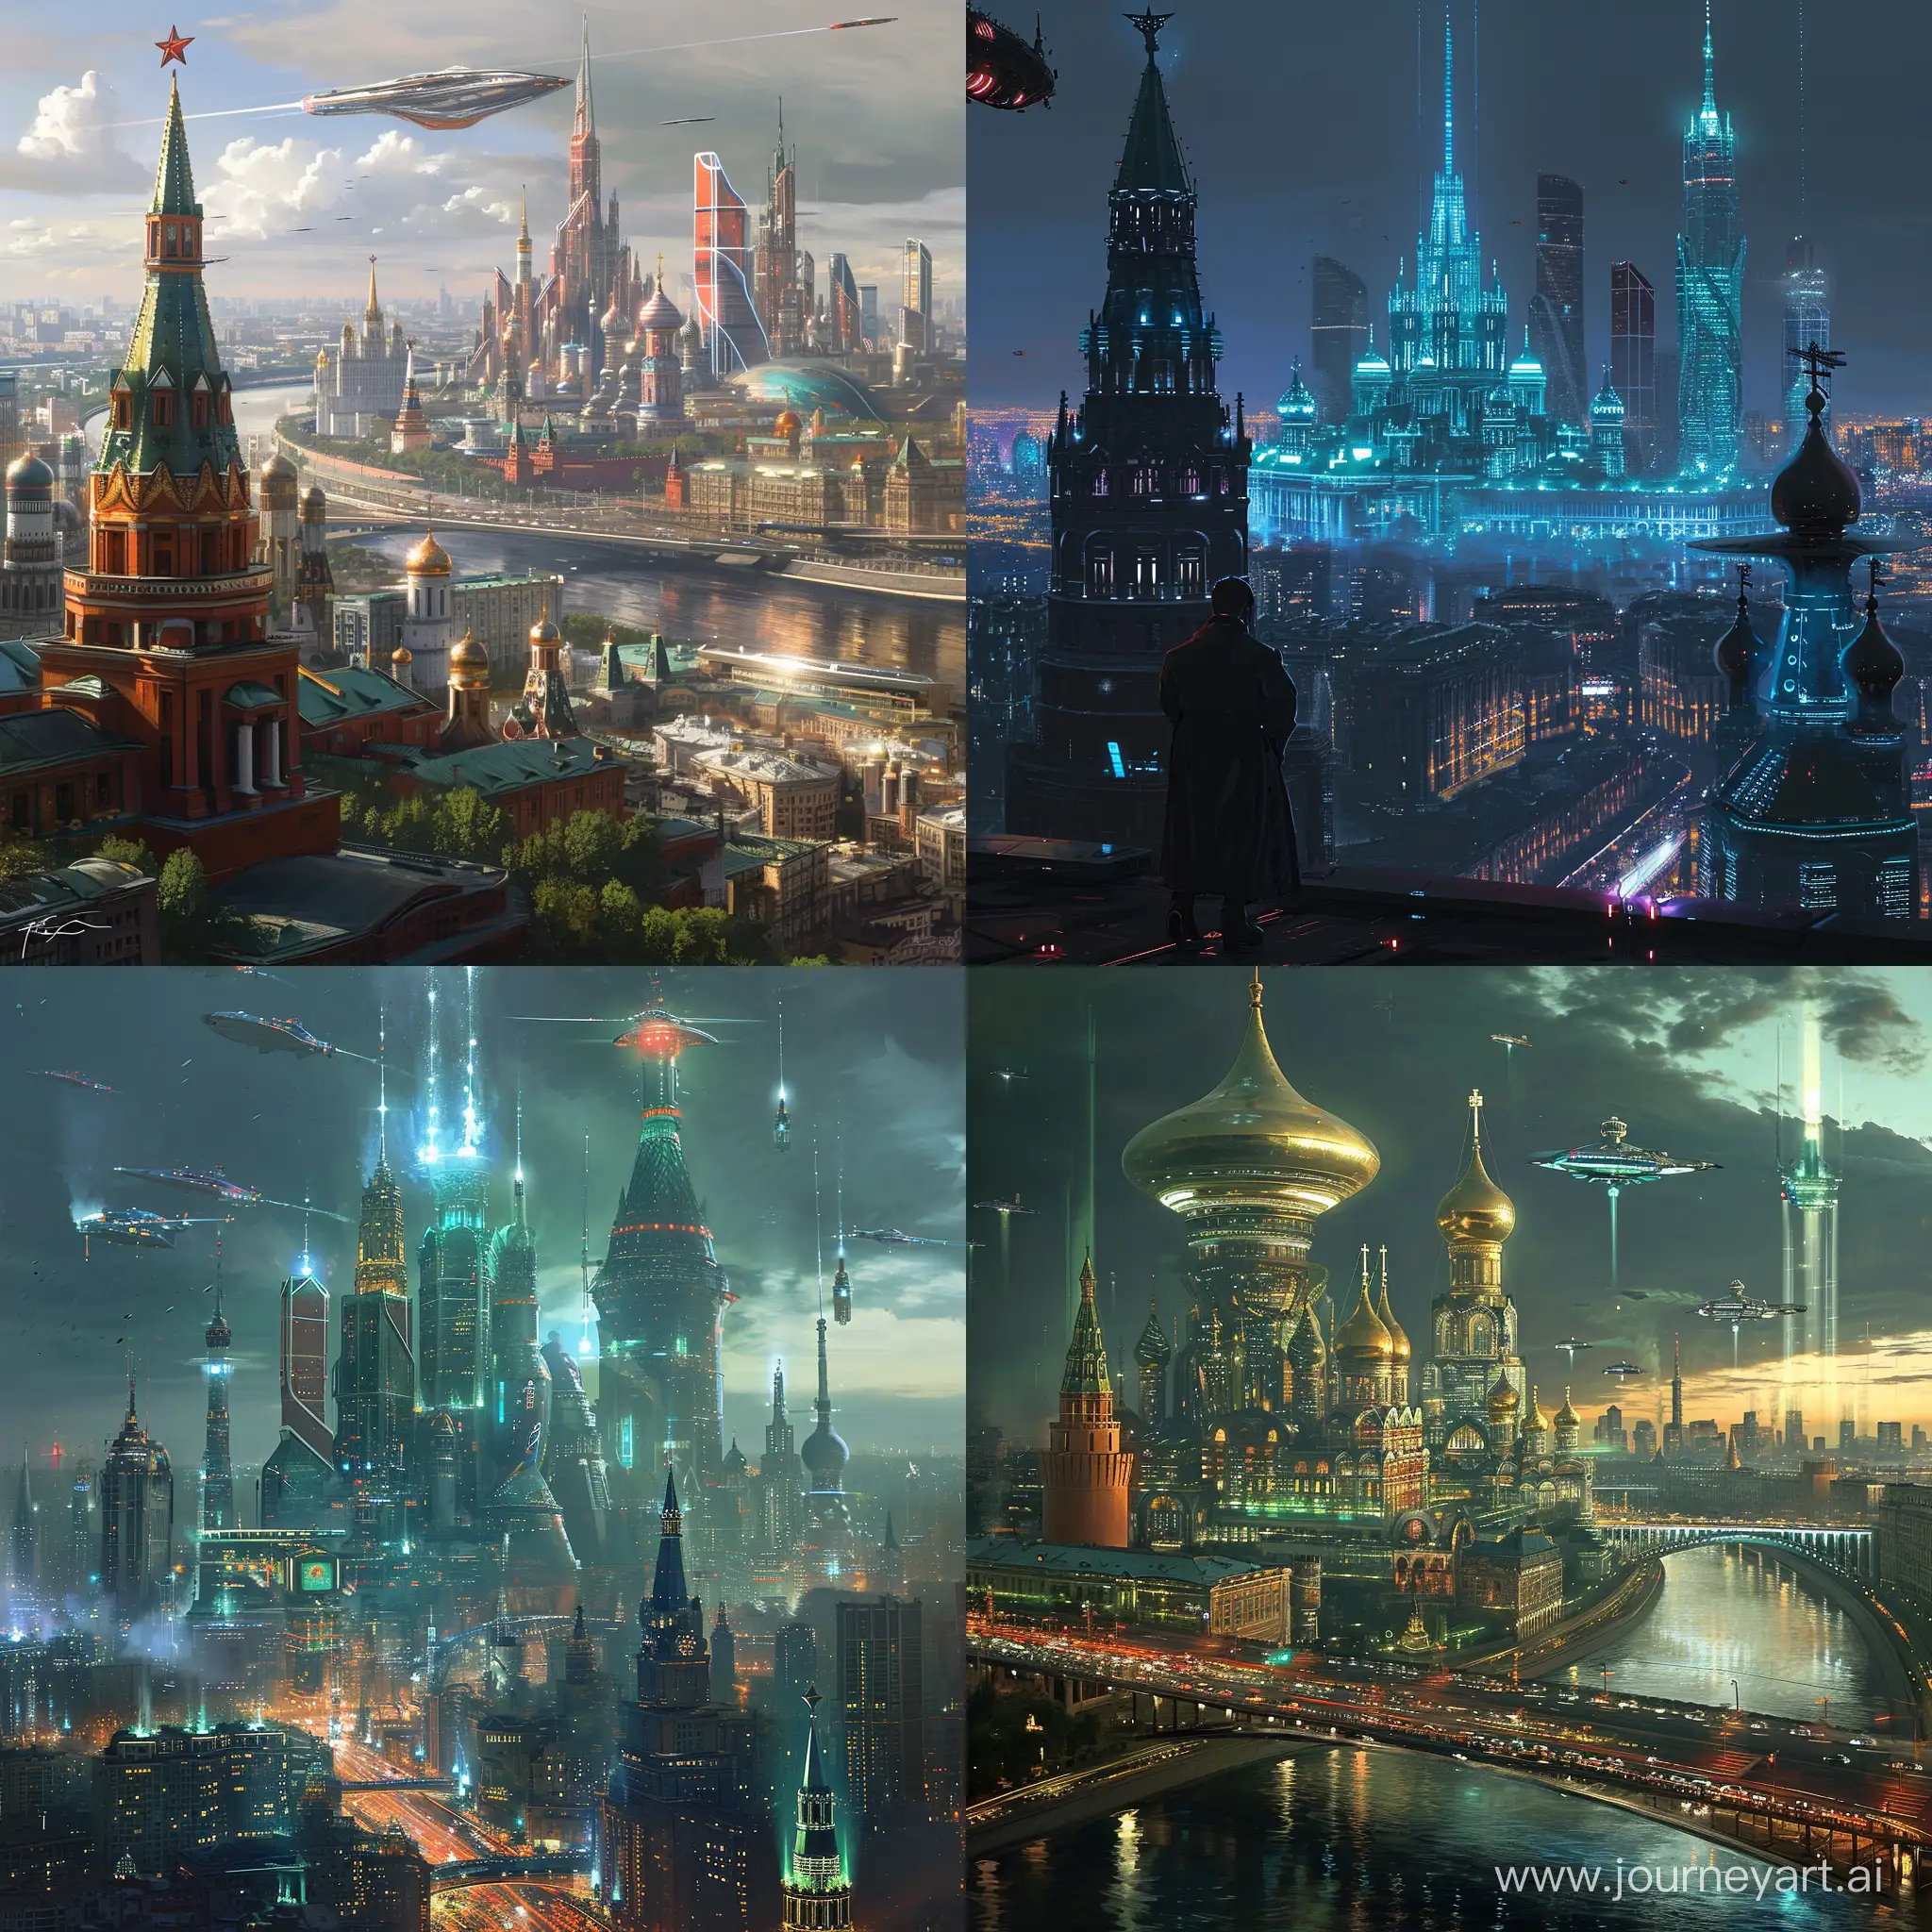 Futuristic-Moscow-Postcyberpunk-Utopia-in-Biopunk-Splendor